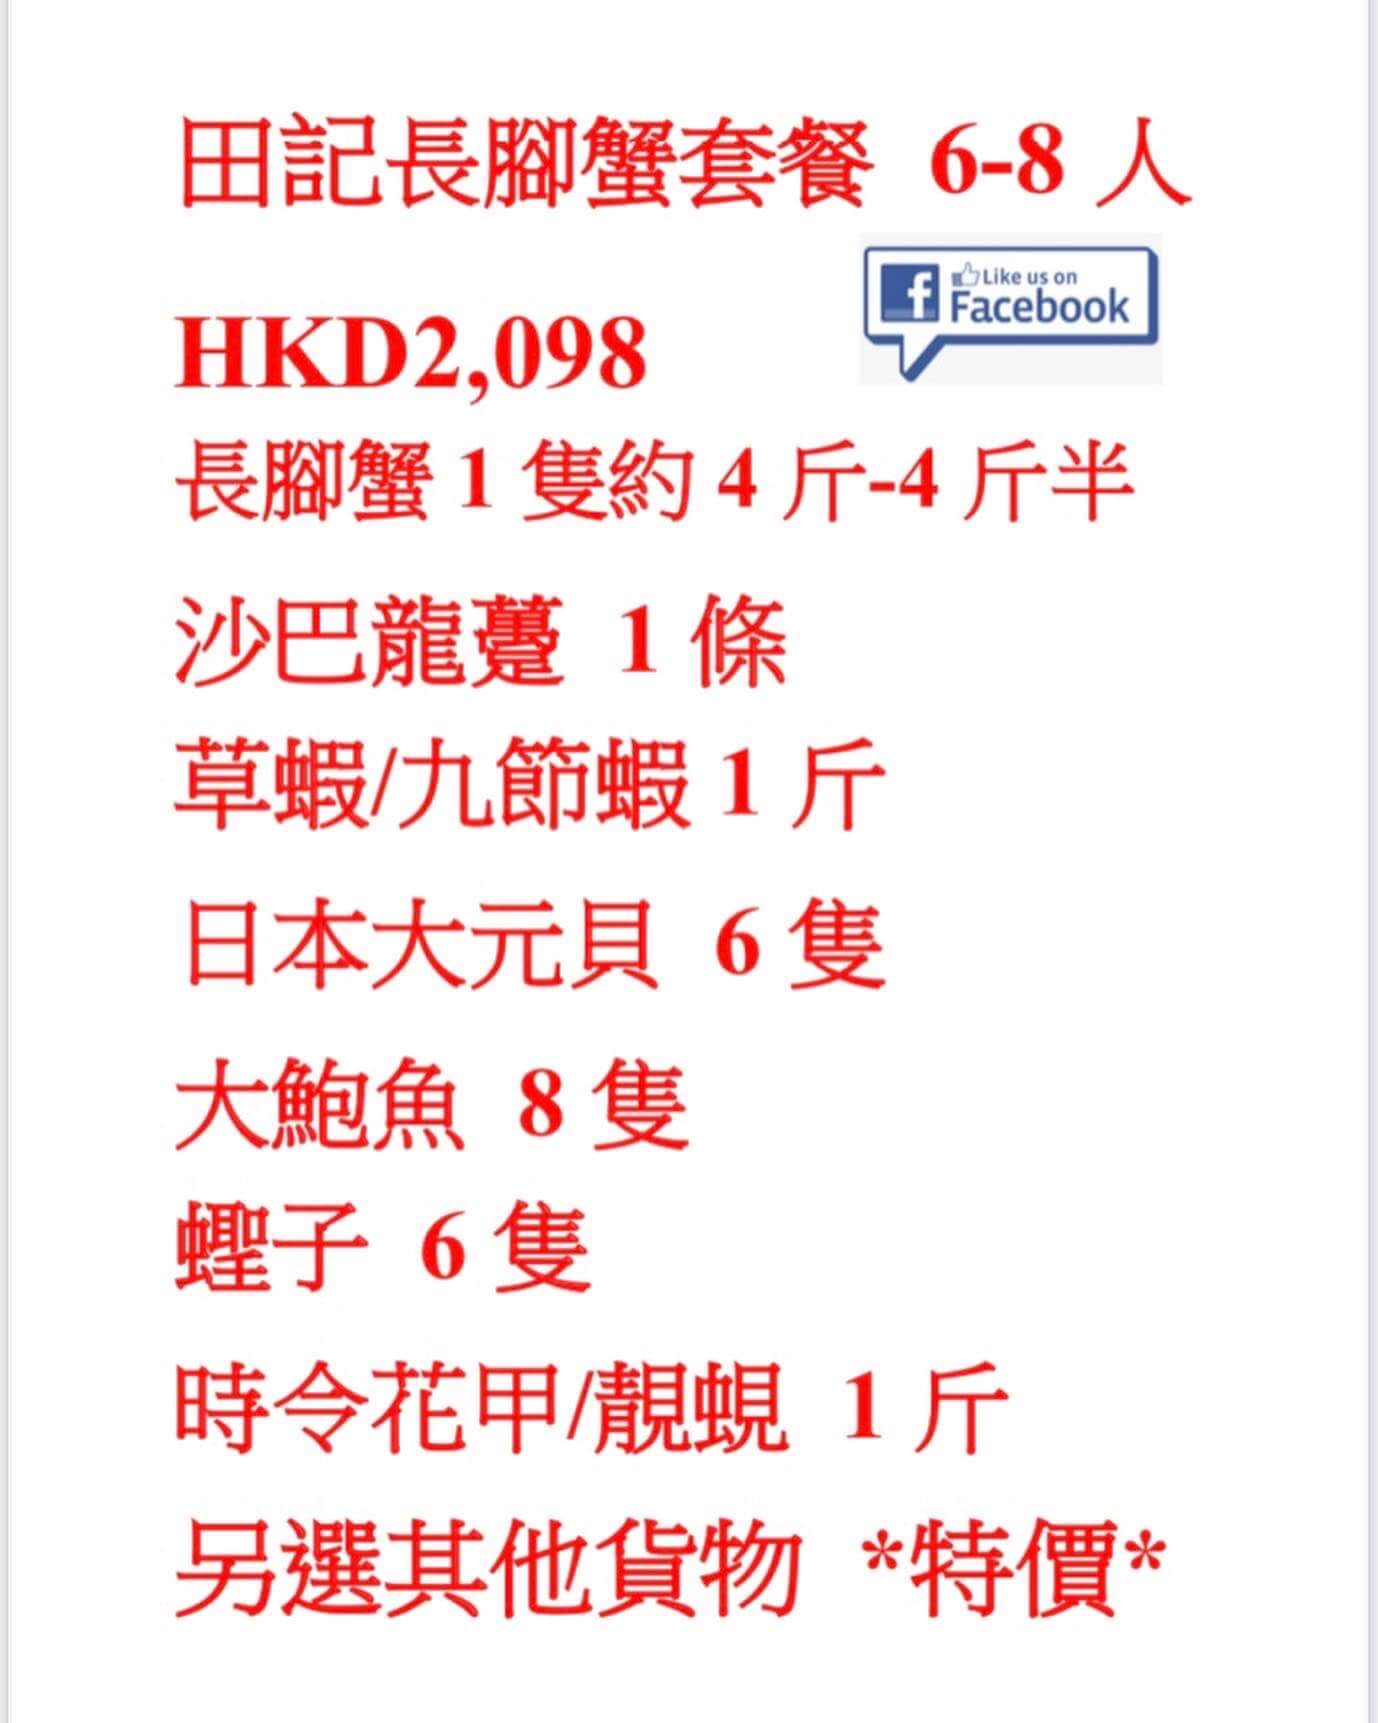 田記海鮮的特許經營香港區加盟店項目7